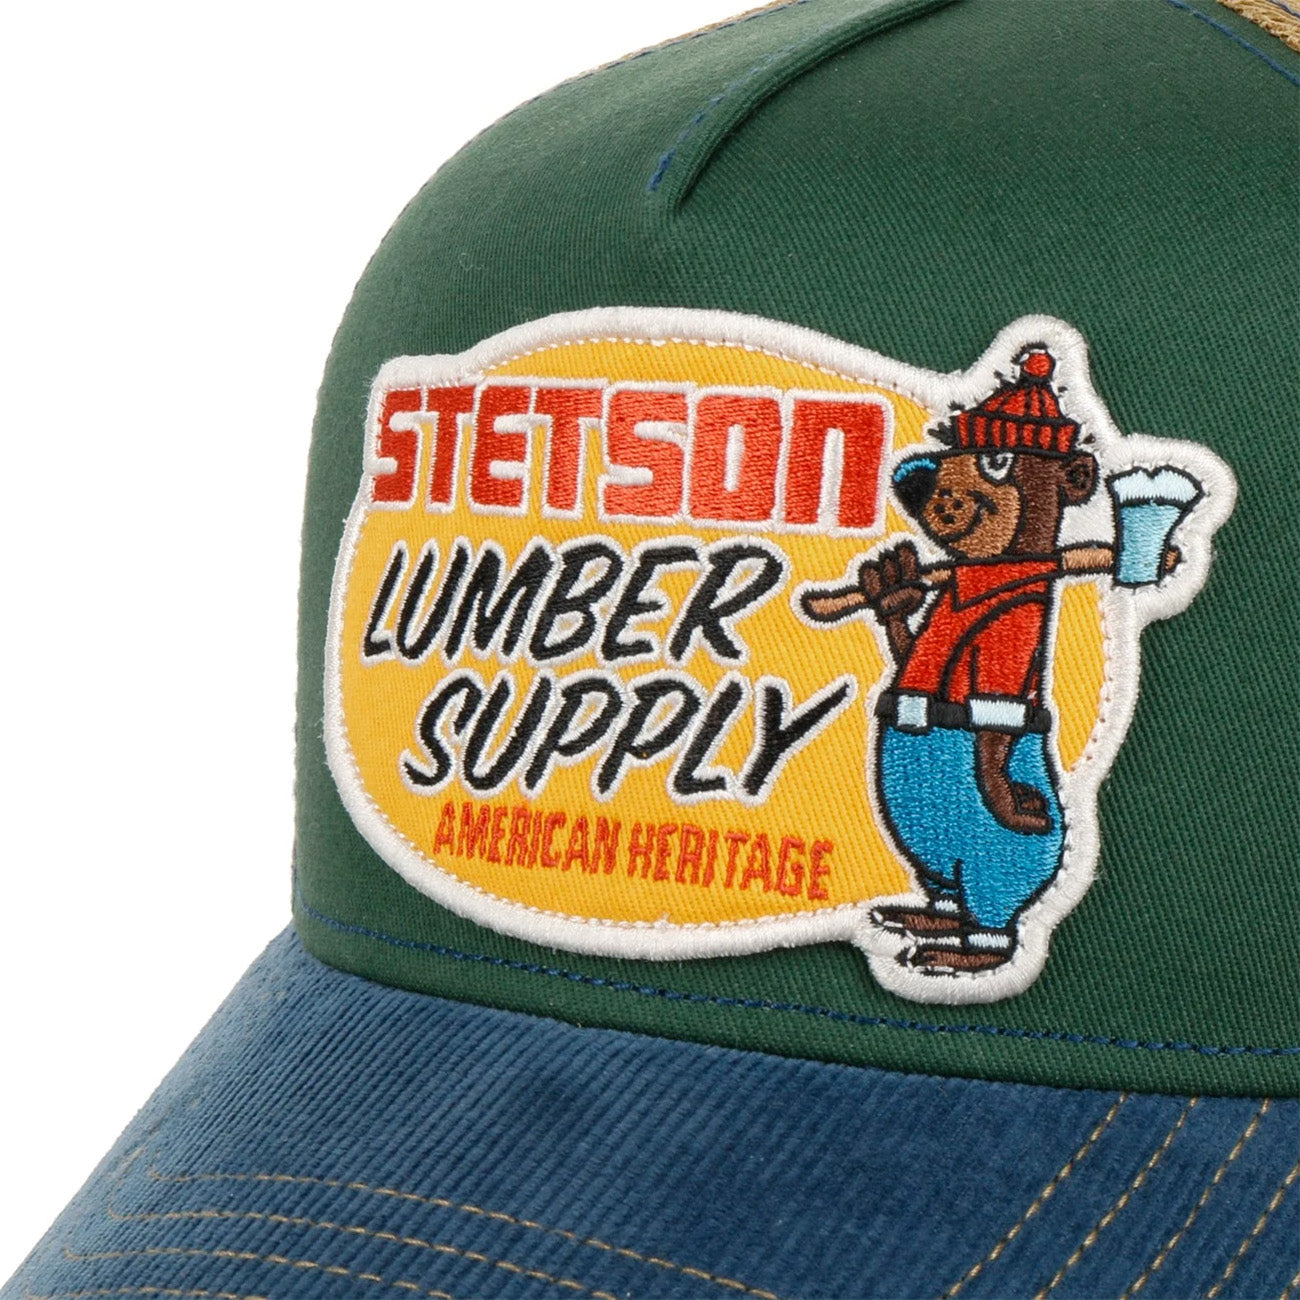 Stetson Lumber Supply Trucker Cap - Denim/Green